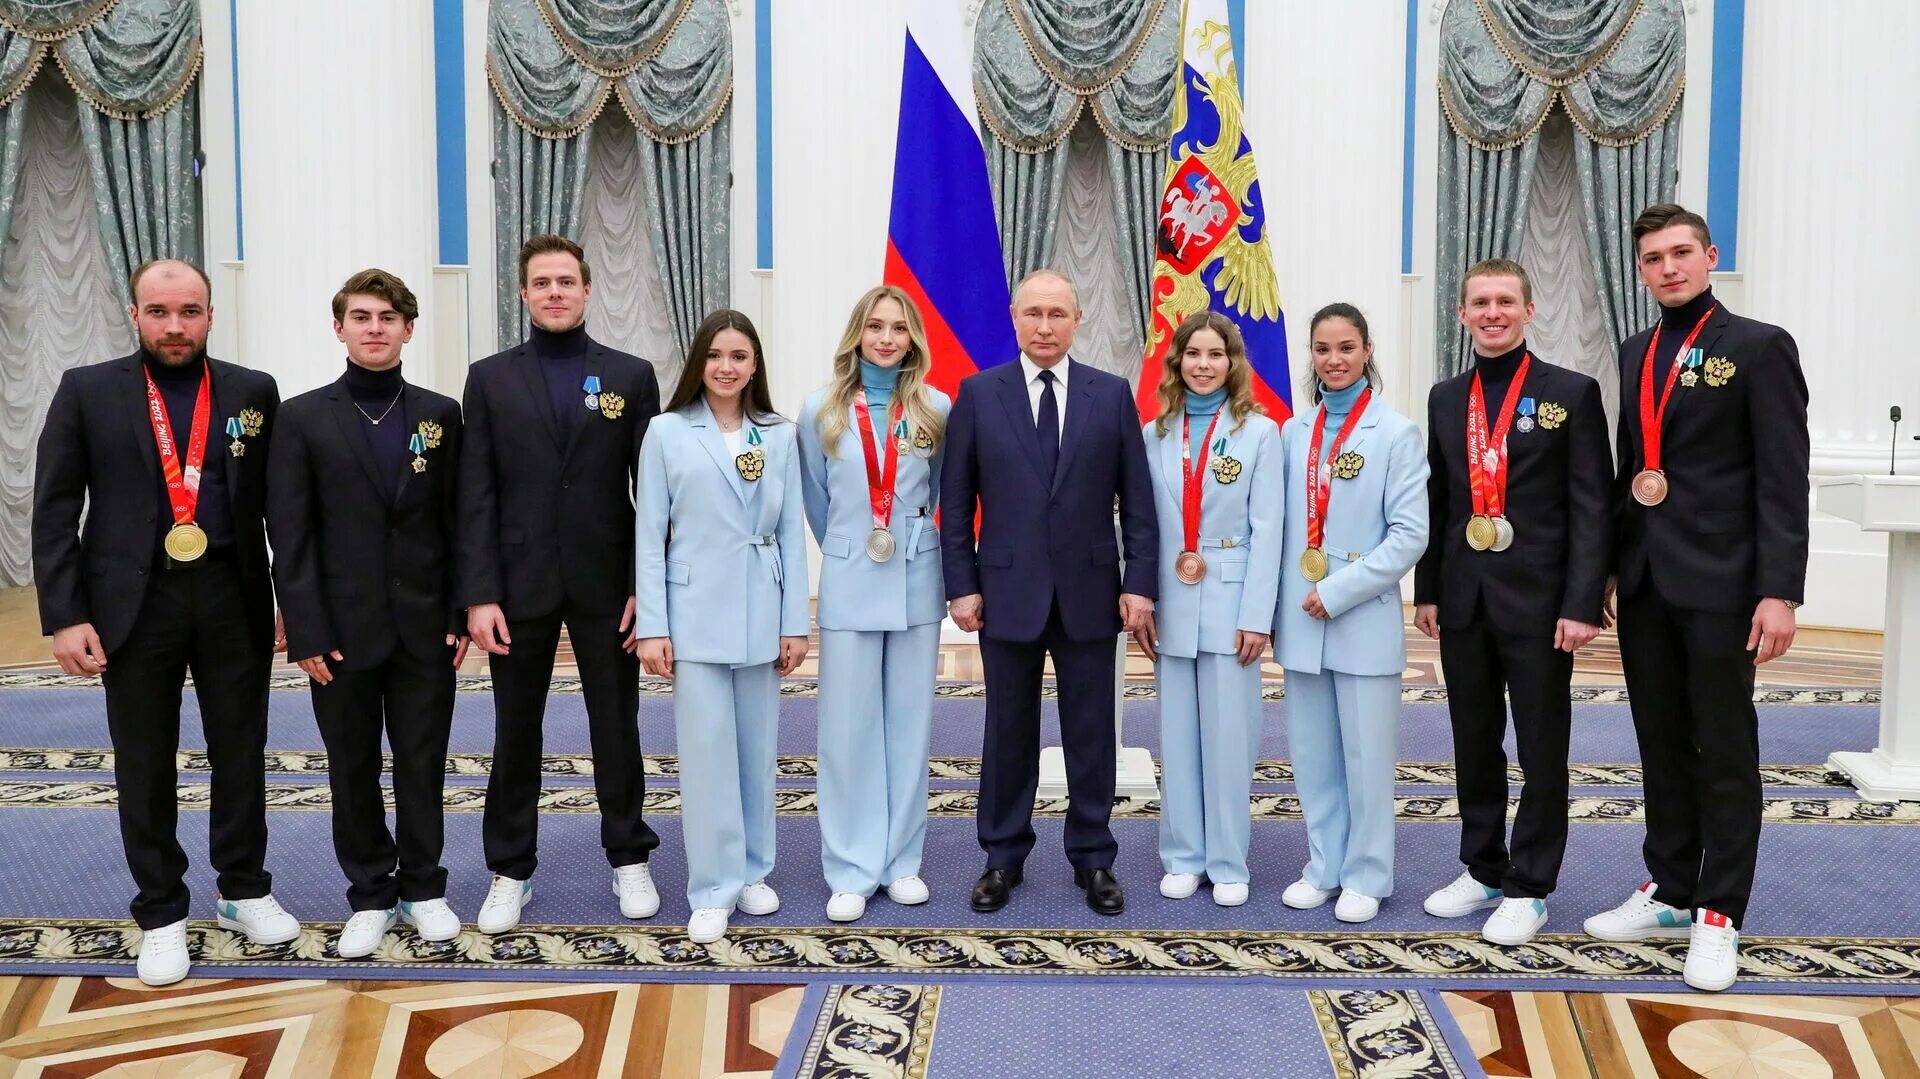 Награждение олимпиады 2022 в Кремле.